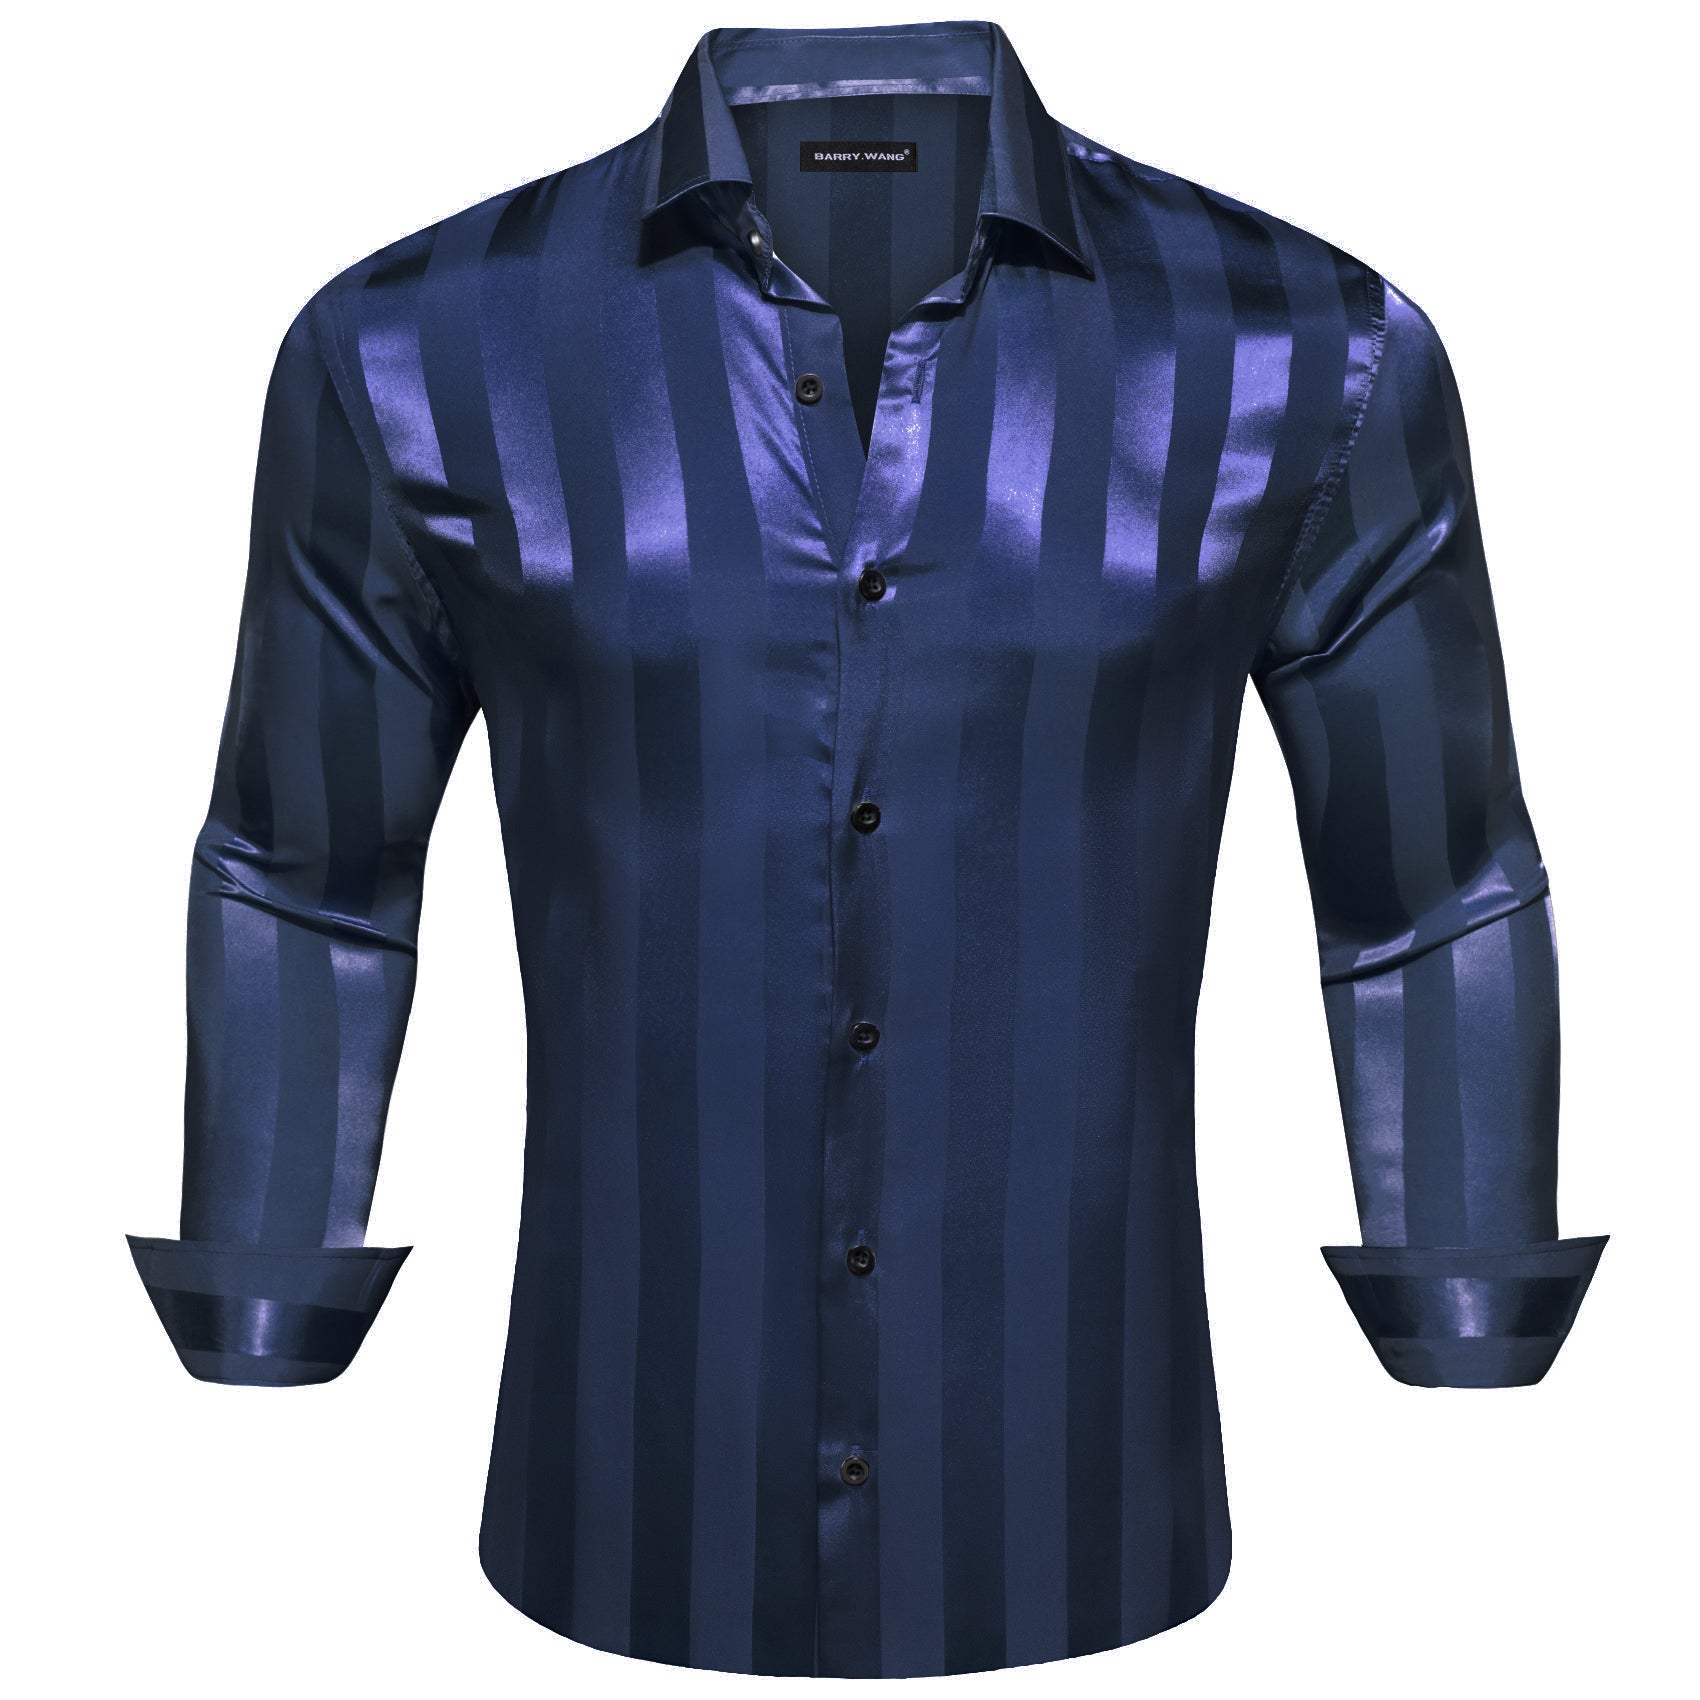 Barry.wang Button Down Shirt Peacock Blue Striped Silk Men's Shirt